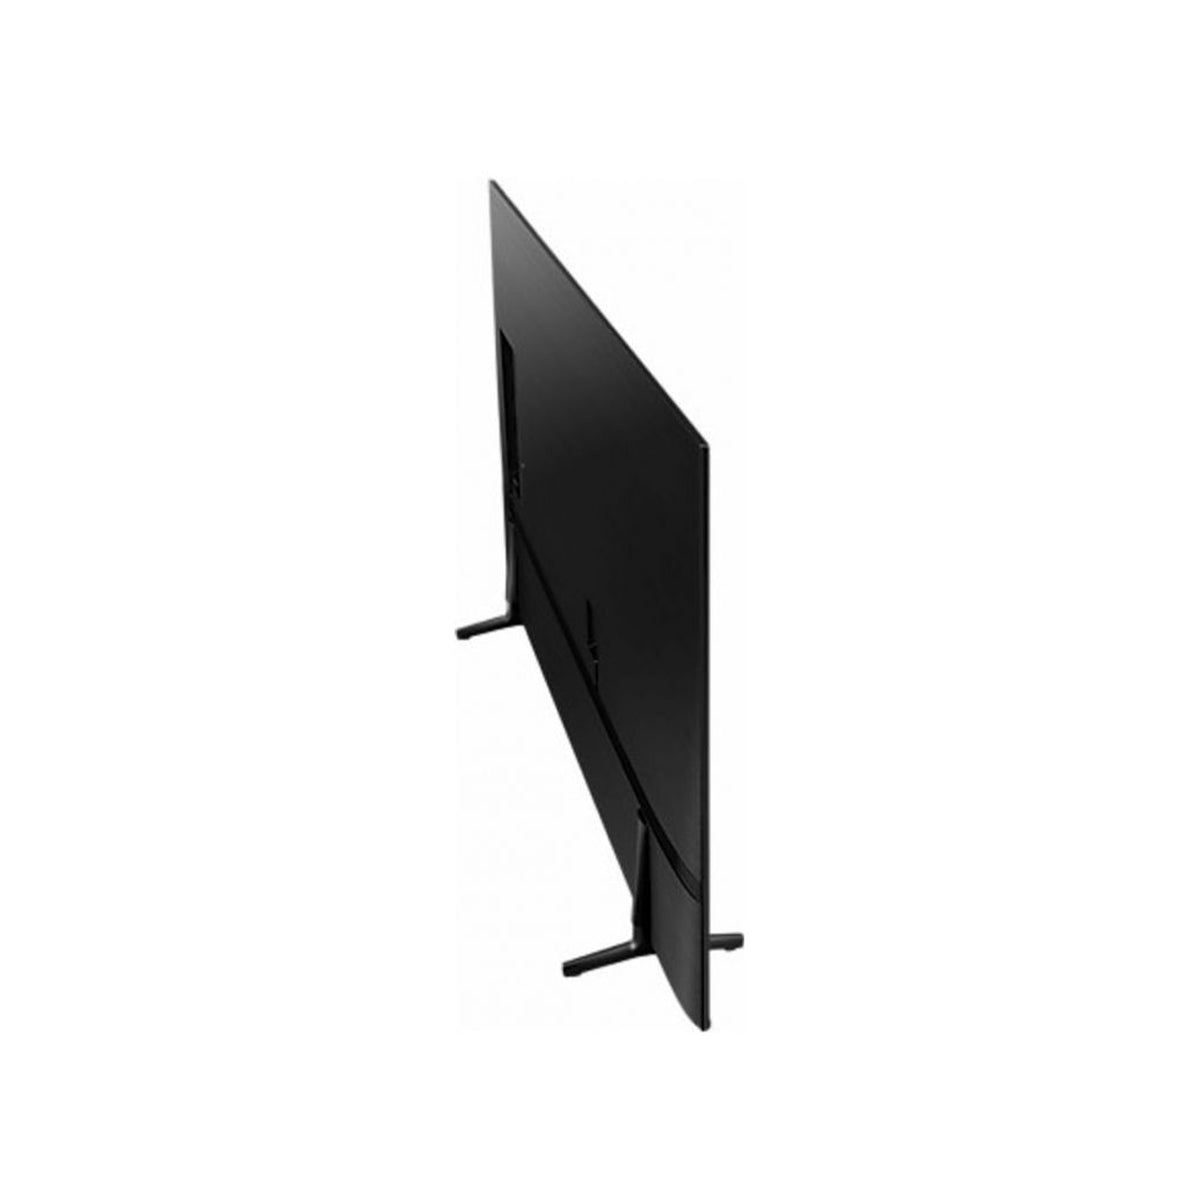 Smart Tv UHD 4K Samsung 65 Pulgadas UN